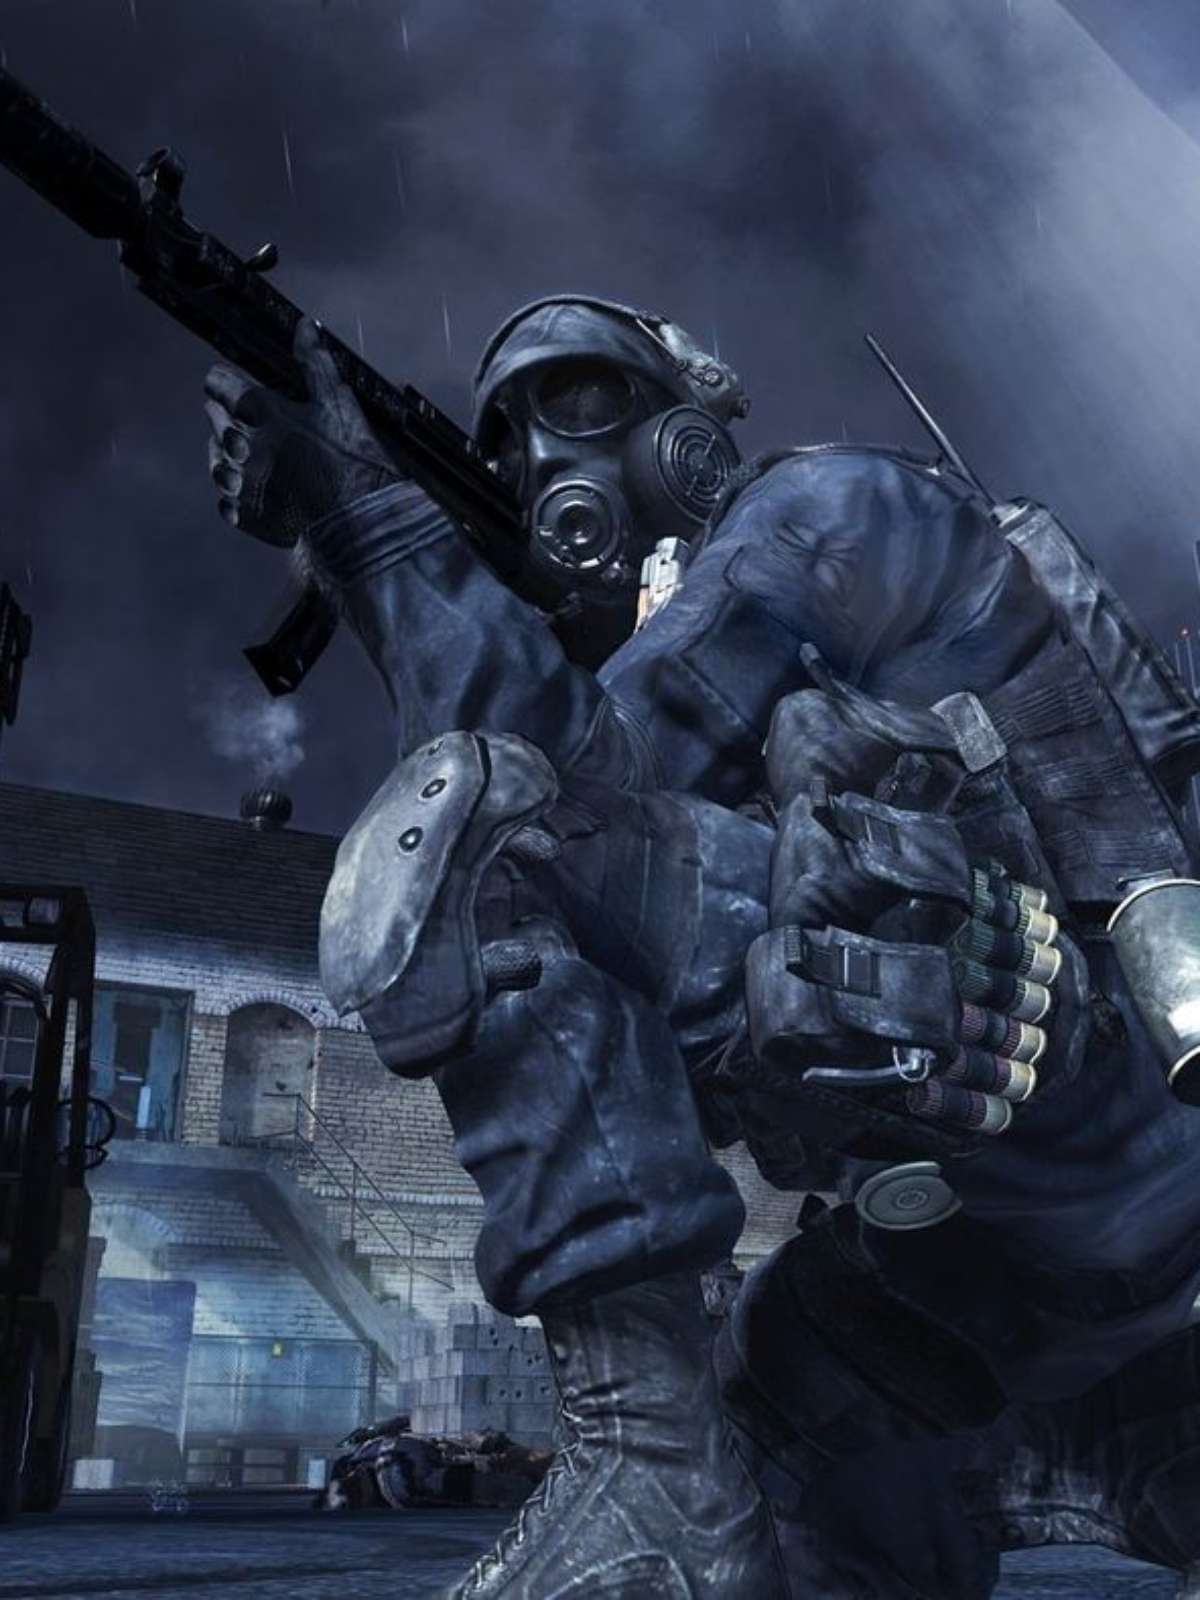 Call of Duty: Modern Warfare 3 pode ser lançado ainda em 2023